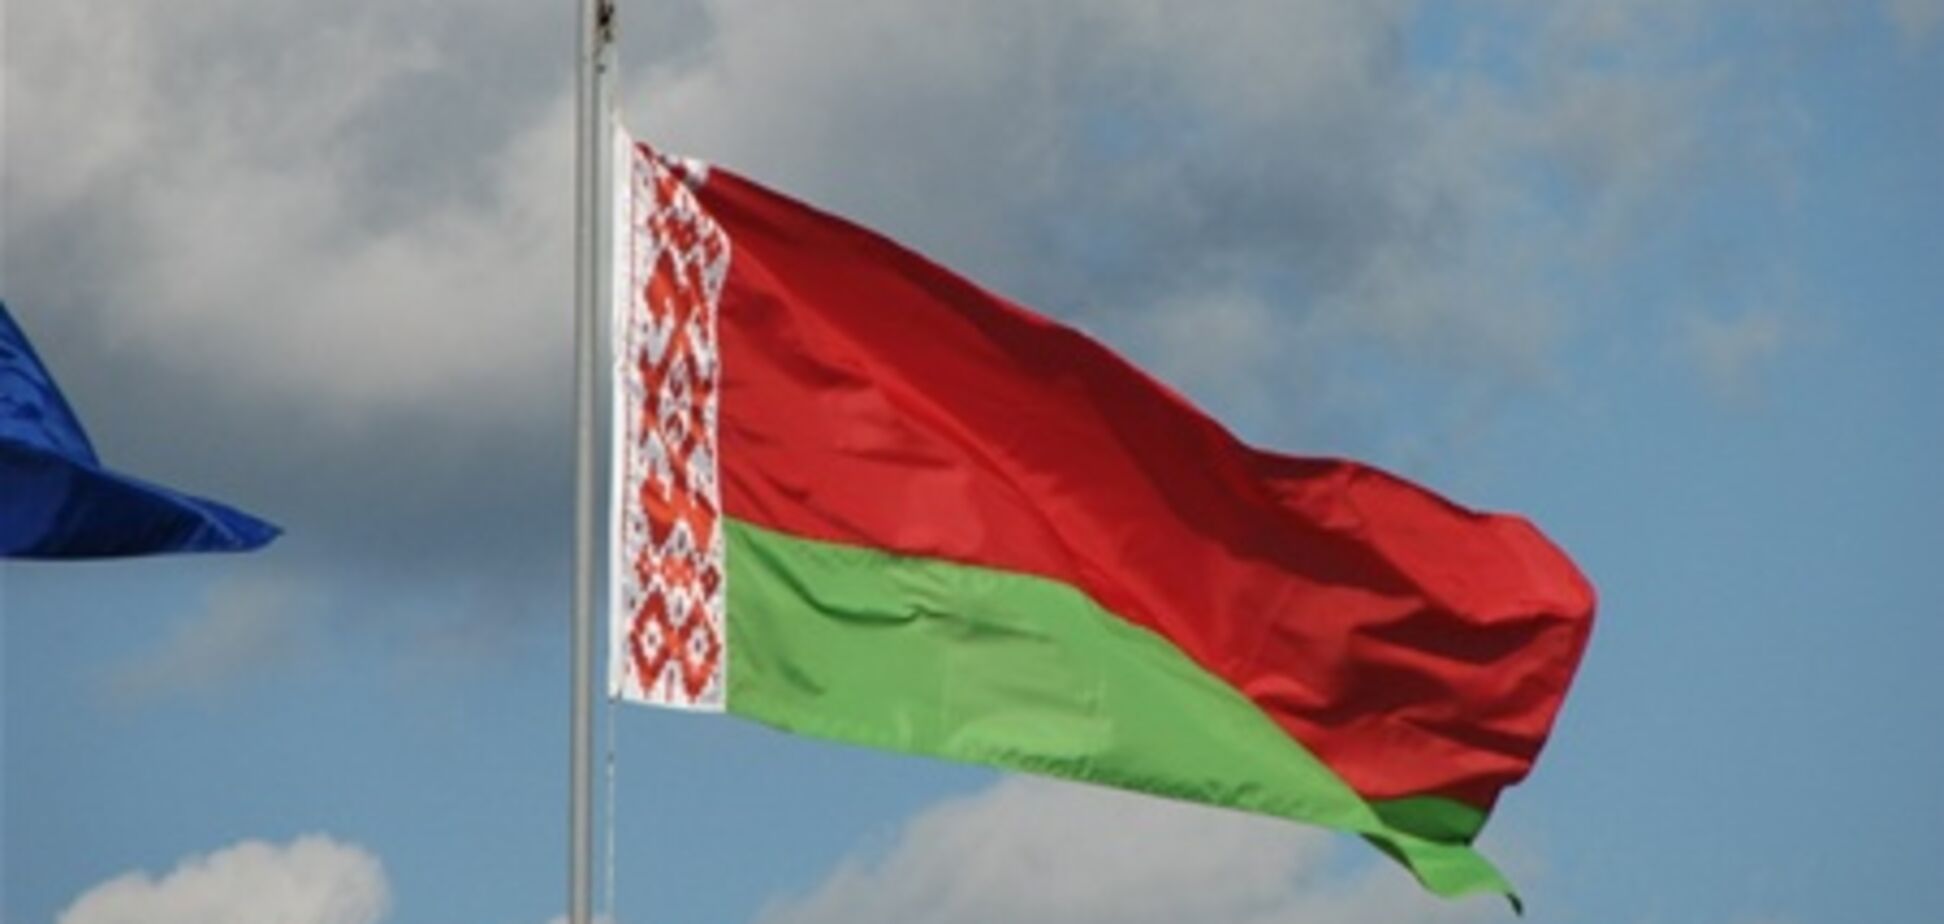 Беларусь просит у МВФ одолжить $8 миллиардов 